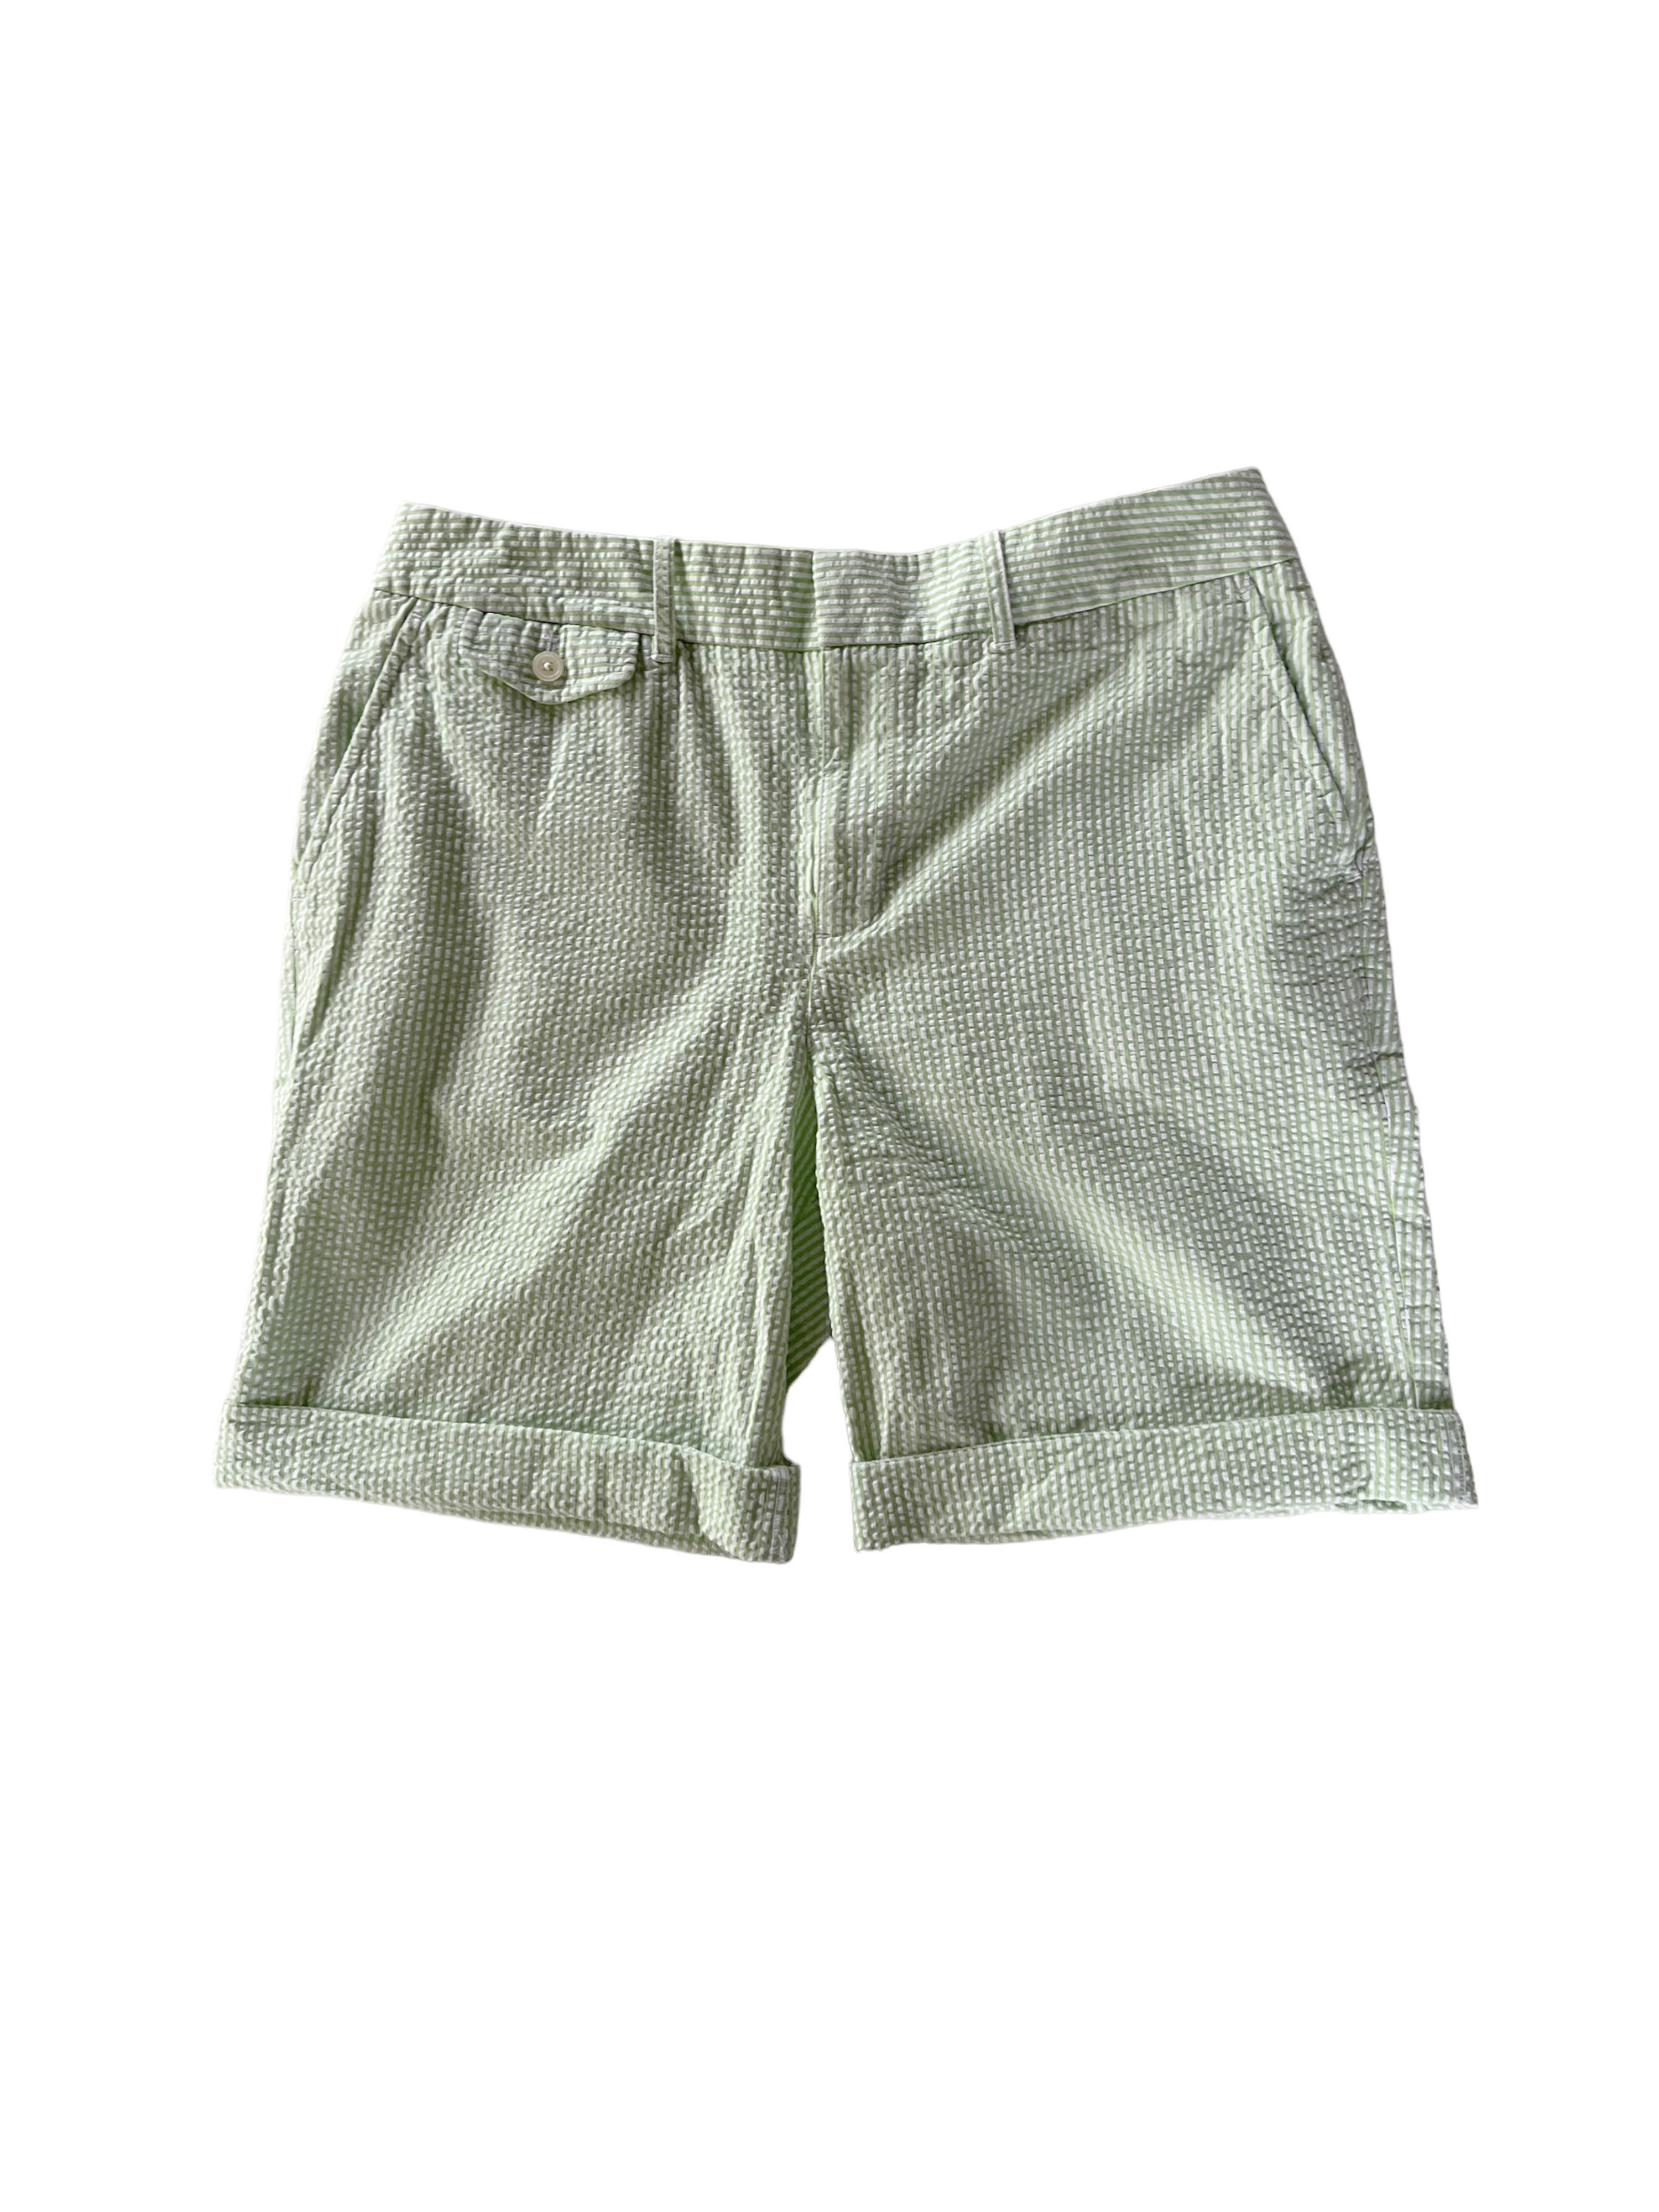 Polo Ralph Lauren seersucker shorts